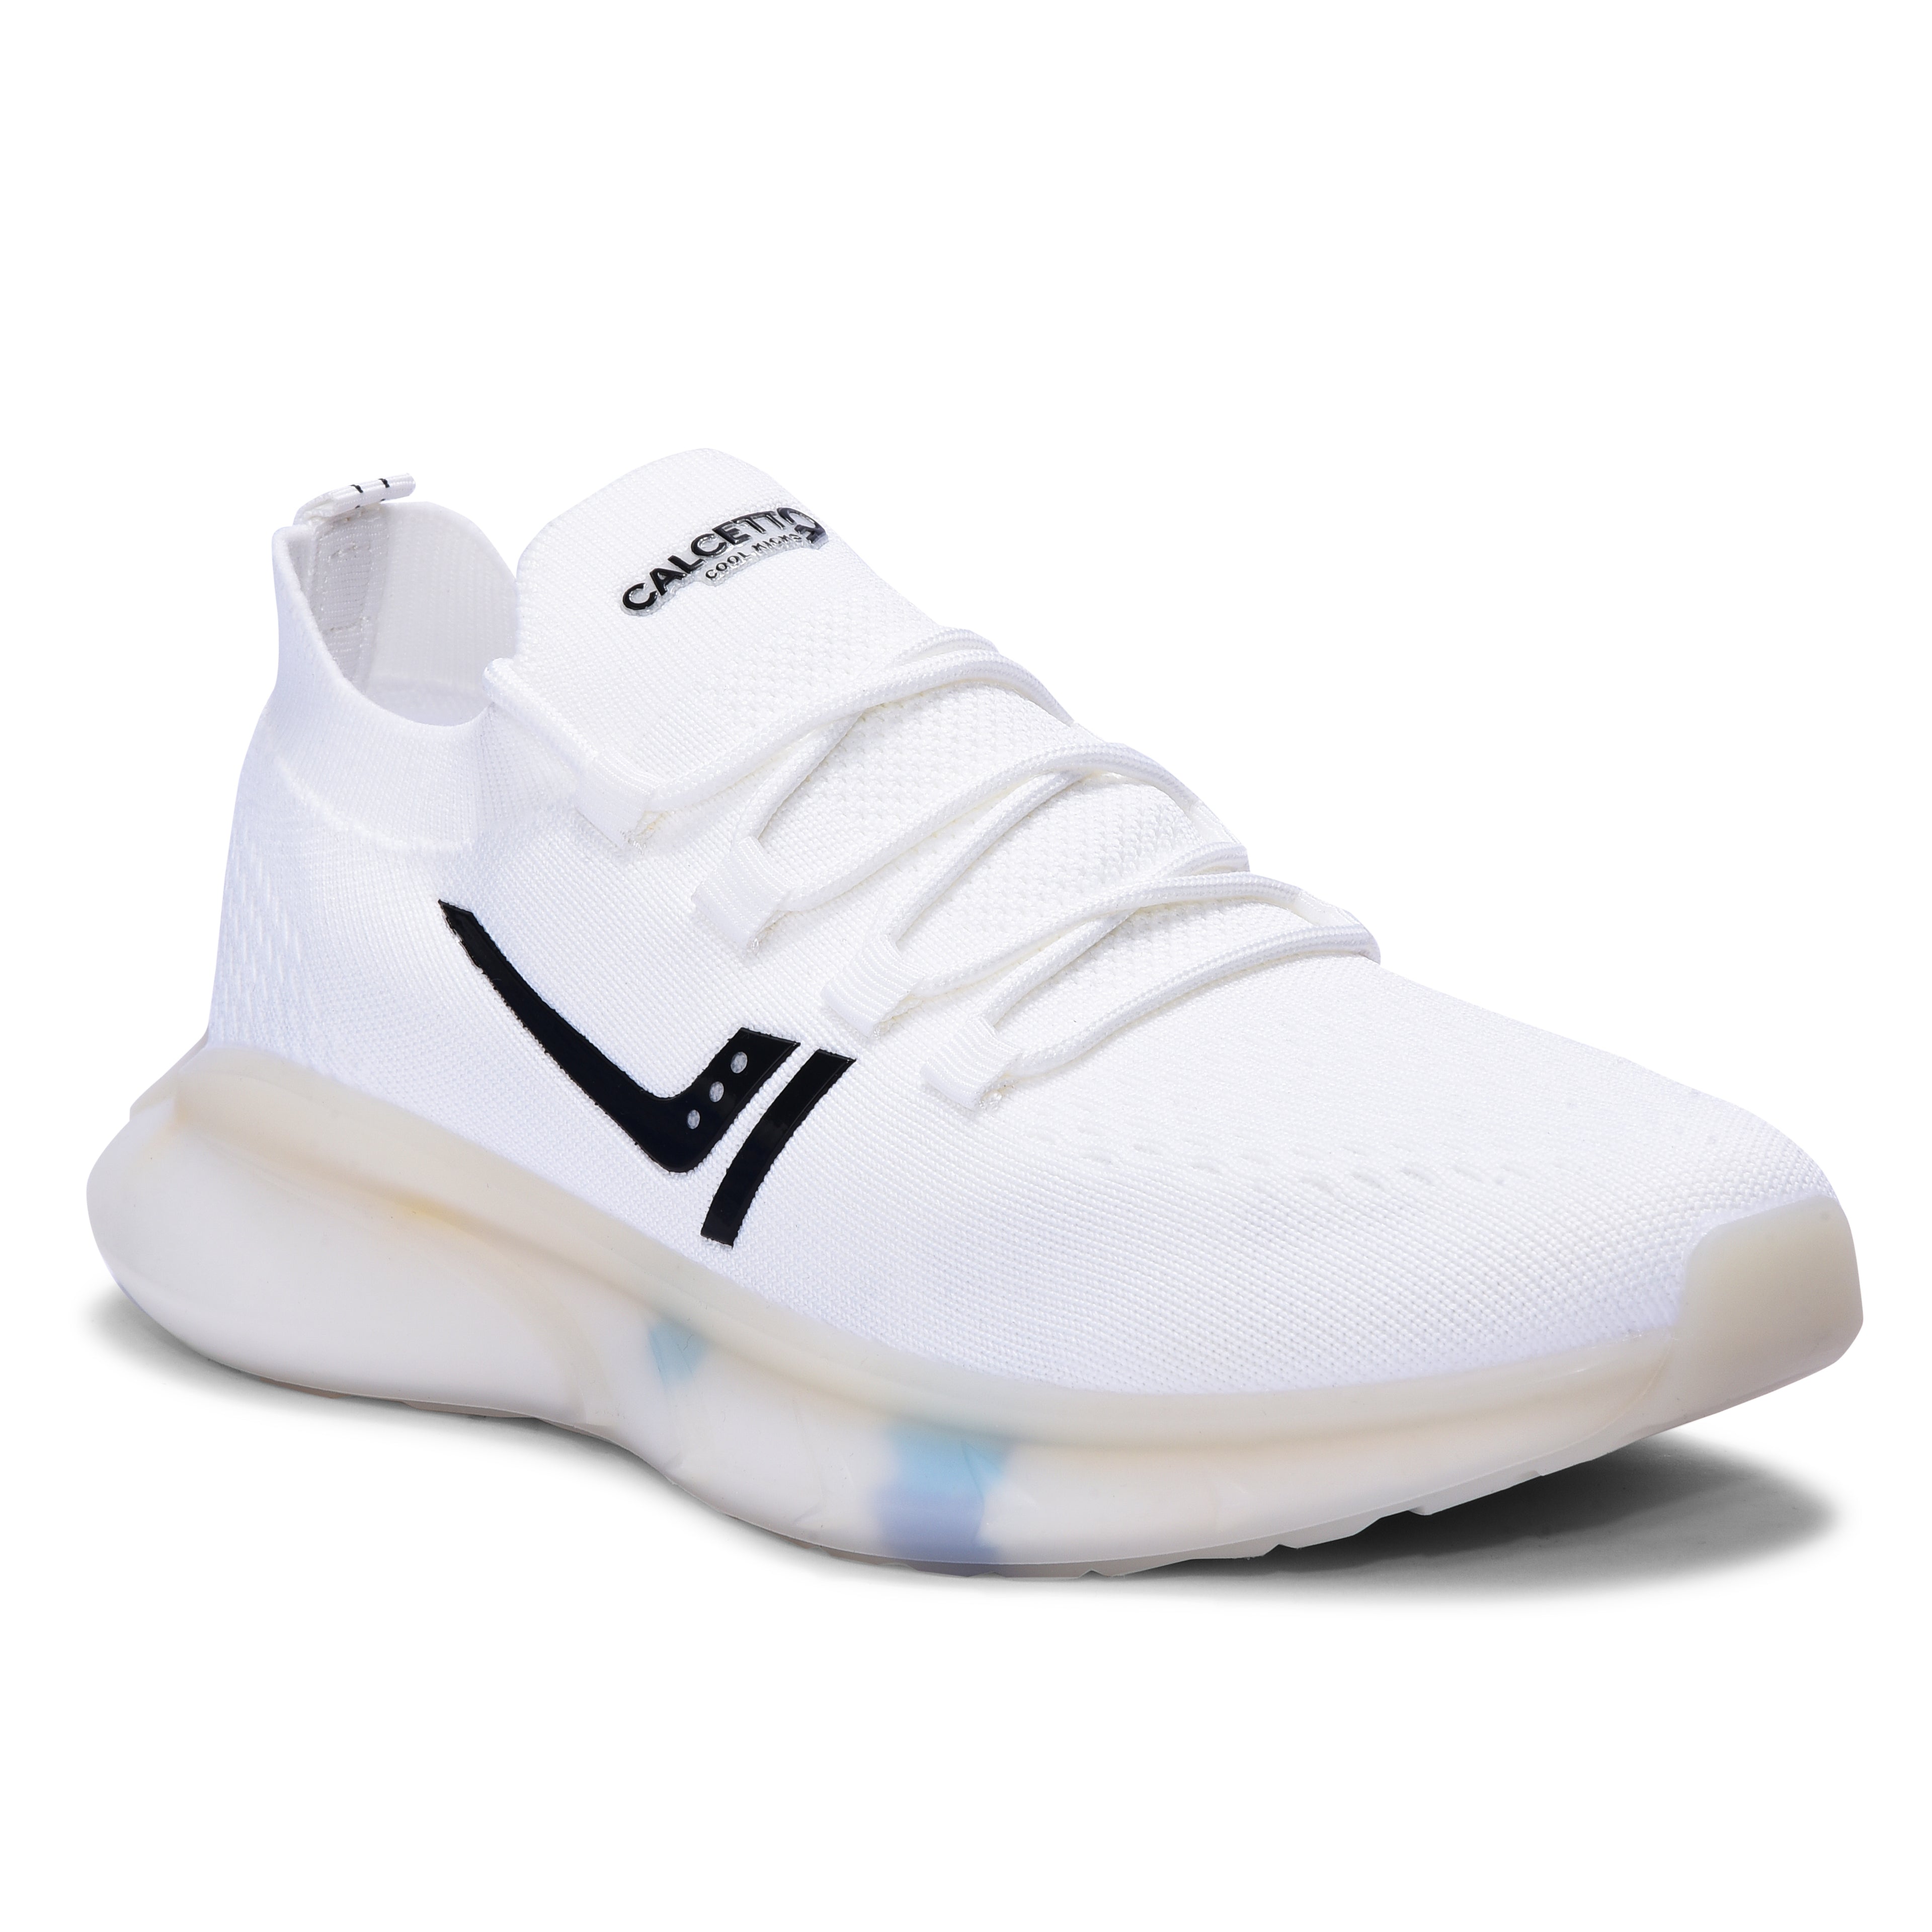 Calcetto CLT-0983 White Black Casual Shoe For Men